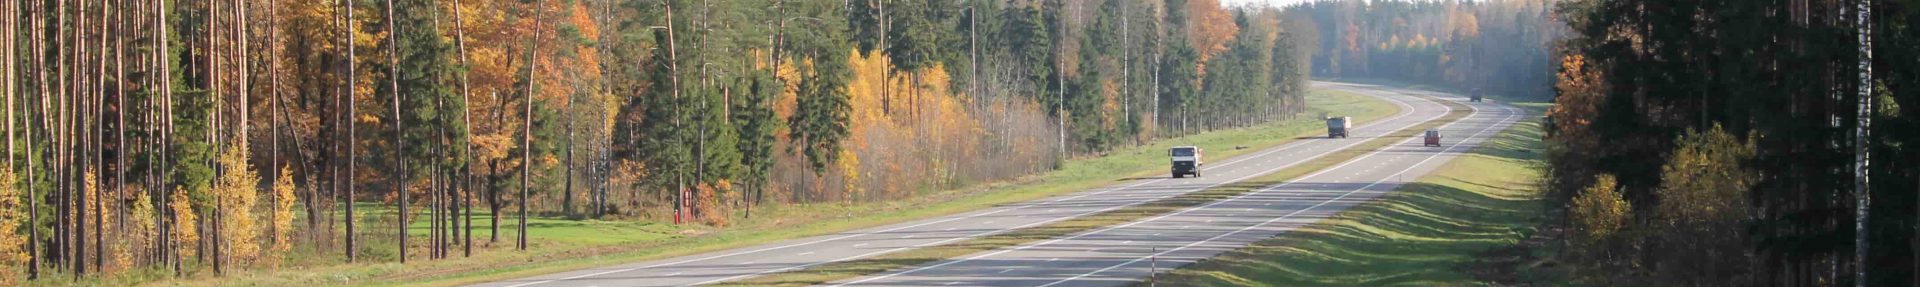 РУП «Белдорцентр» подготовлены новые статистические данные о сети дорог в Республике Беларусь